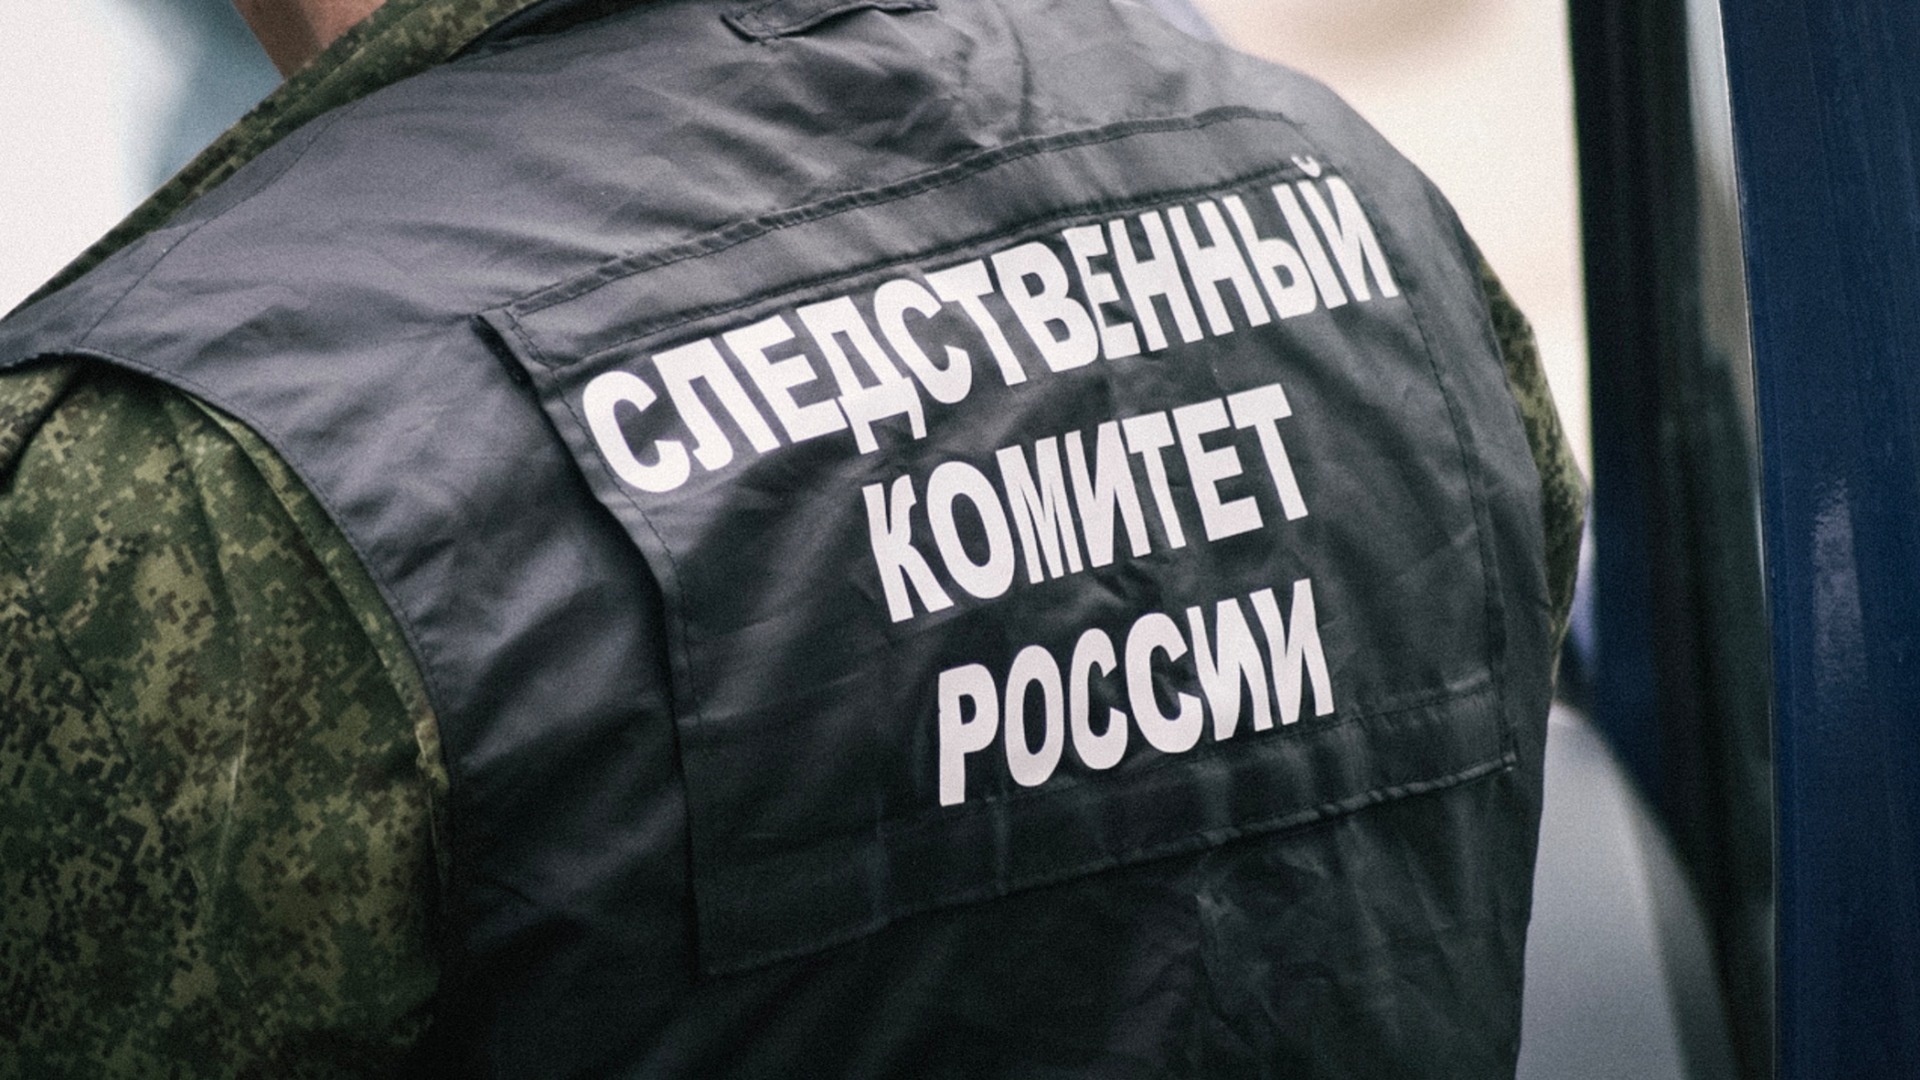 Нападение на фельдшера в Челябинске привело к возбуждению уголовного дела